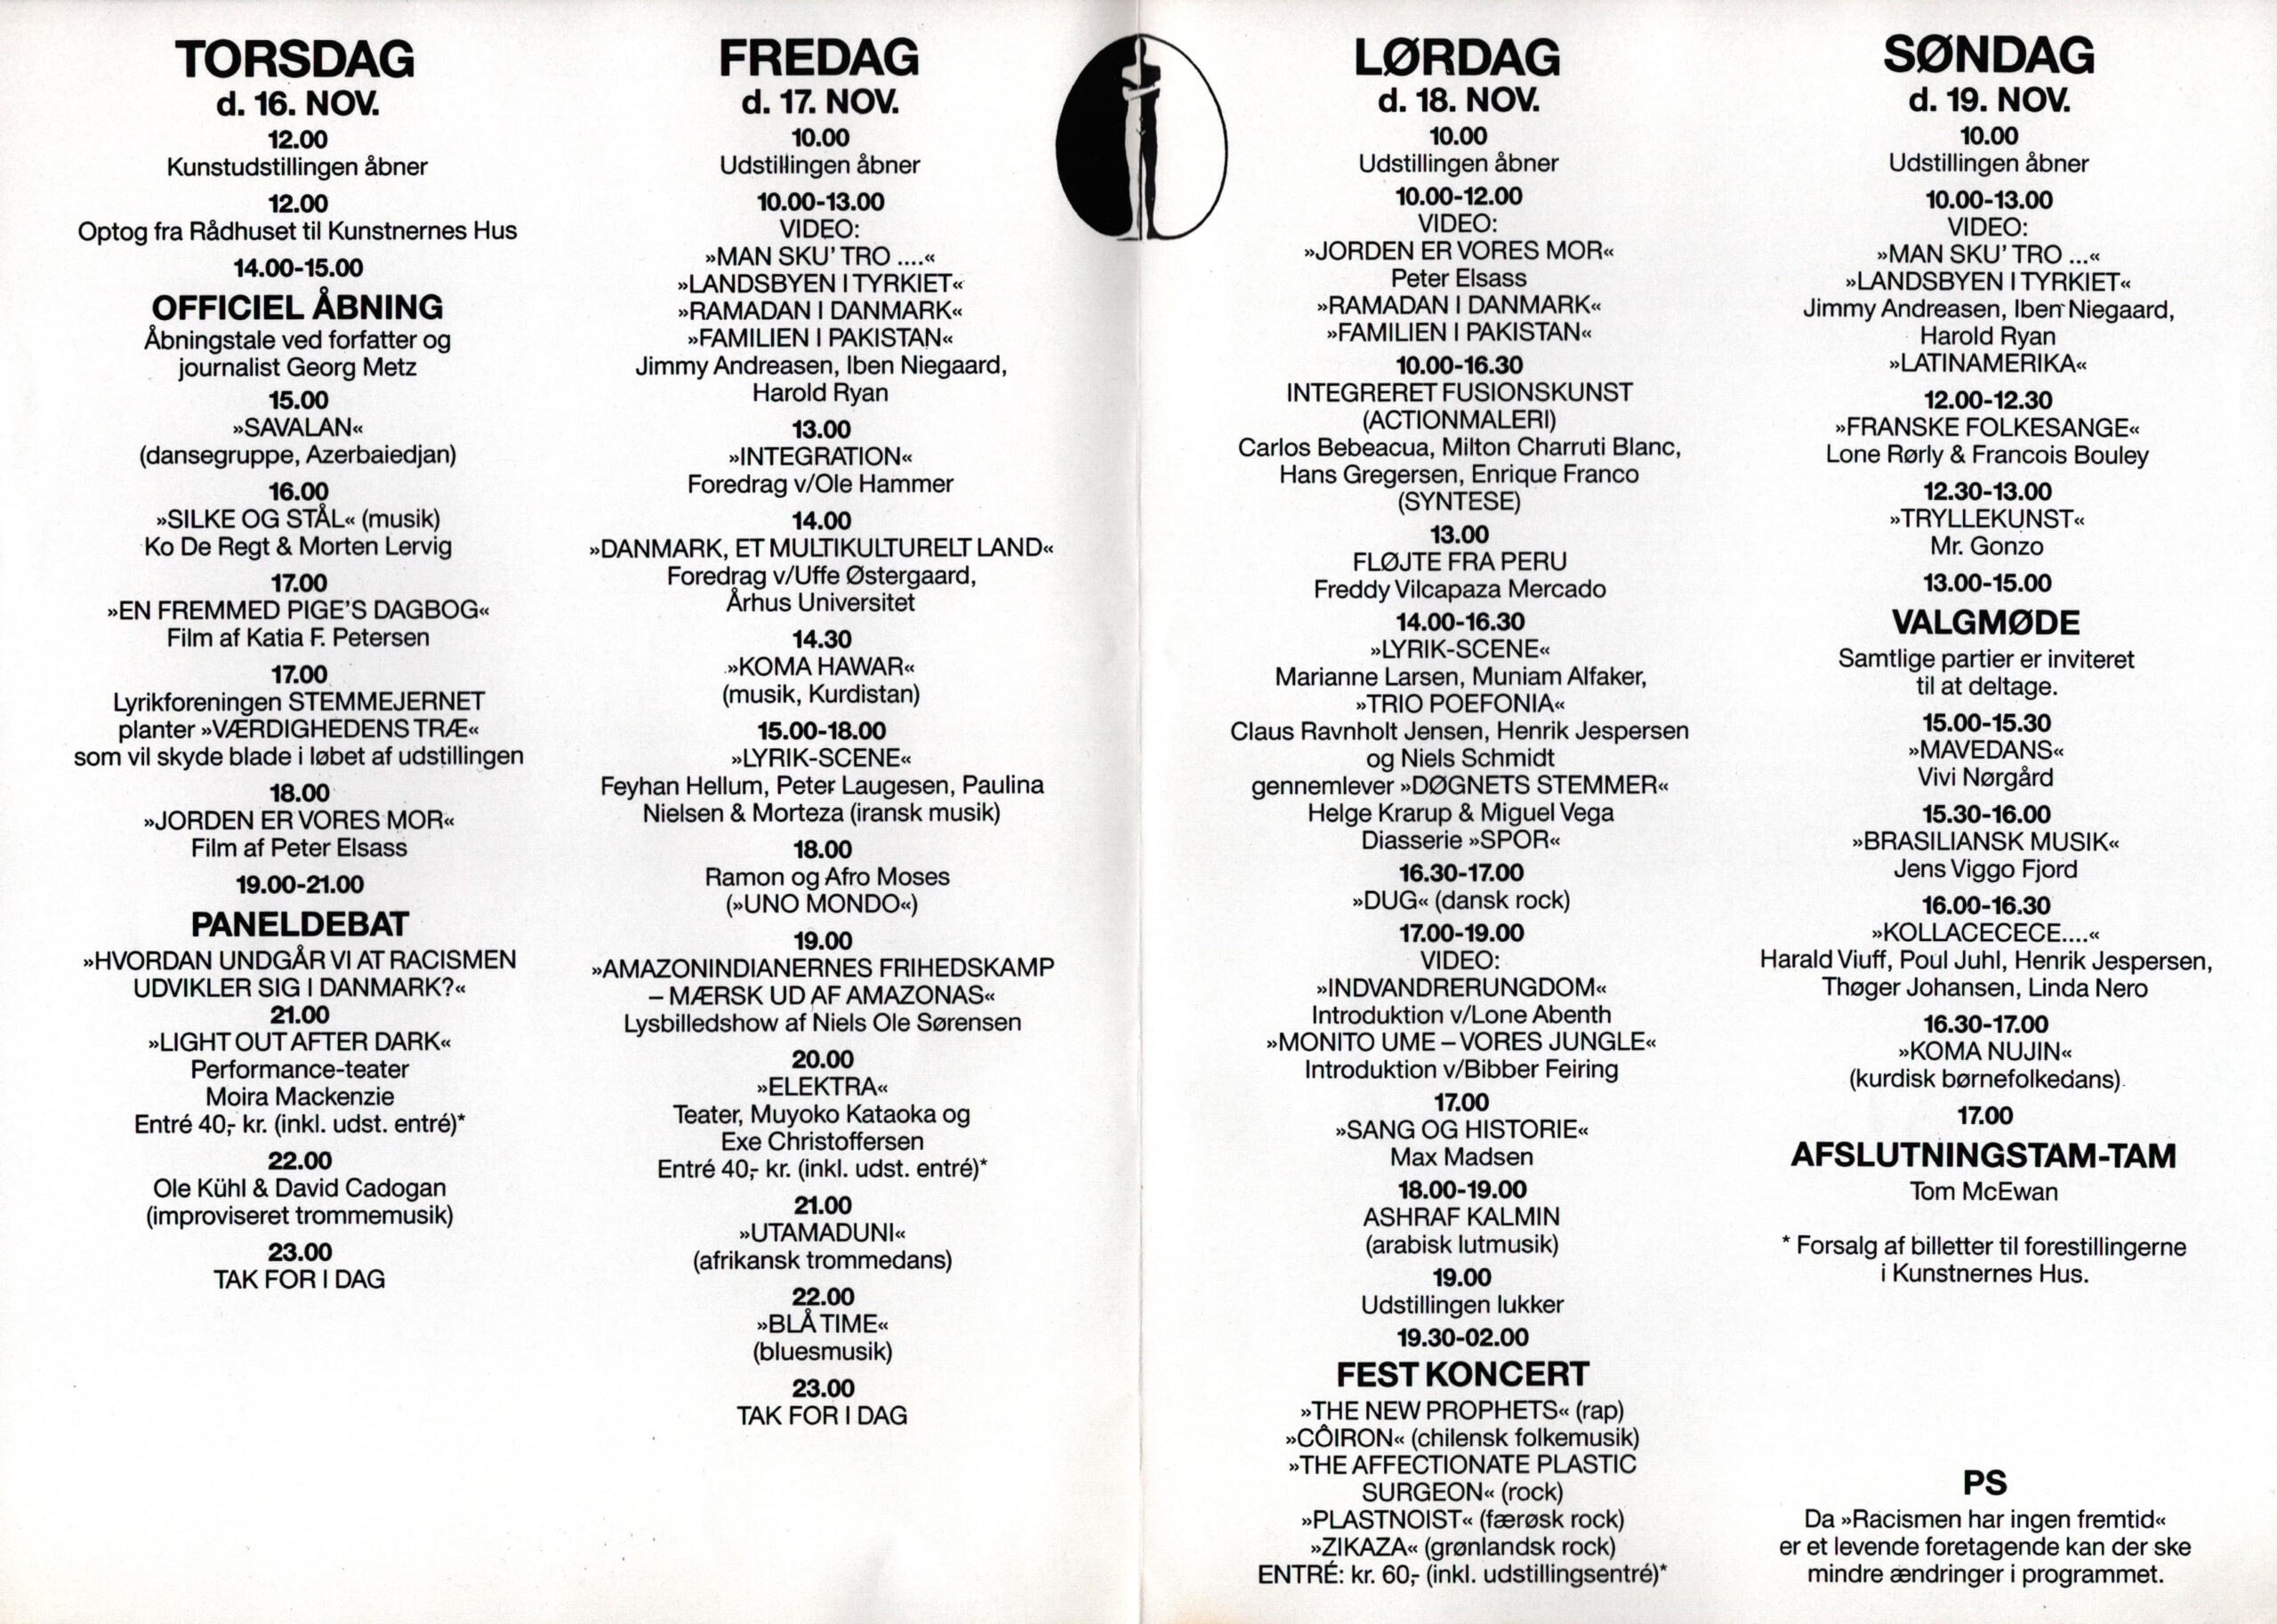 Racismen har ingen fremtid. Programfolder (side 2-3 af 4, dagsprogrammer) vedr. kulturfestivalen Racismen har ingen fremtid. Kunstnernes Hus, Århus. Medio november 1989.